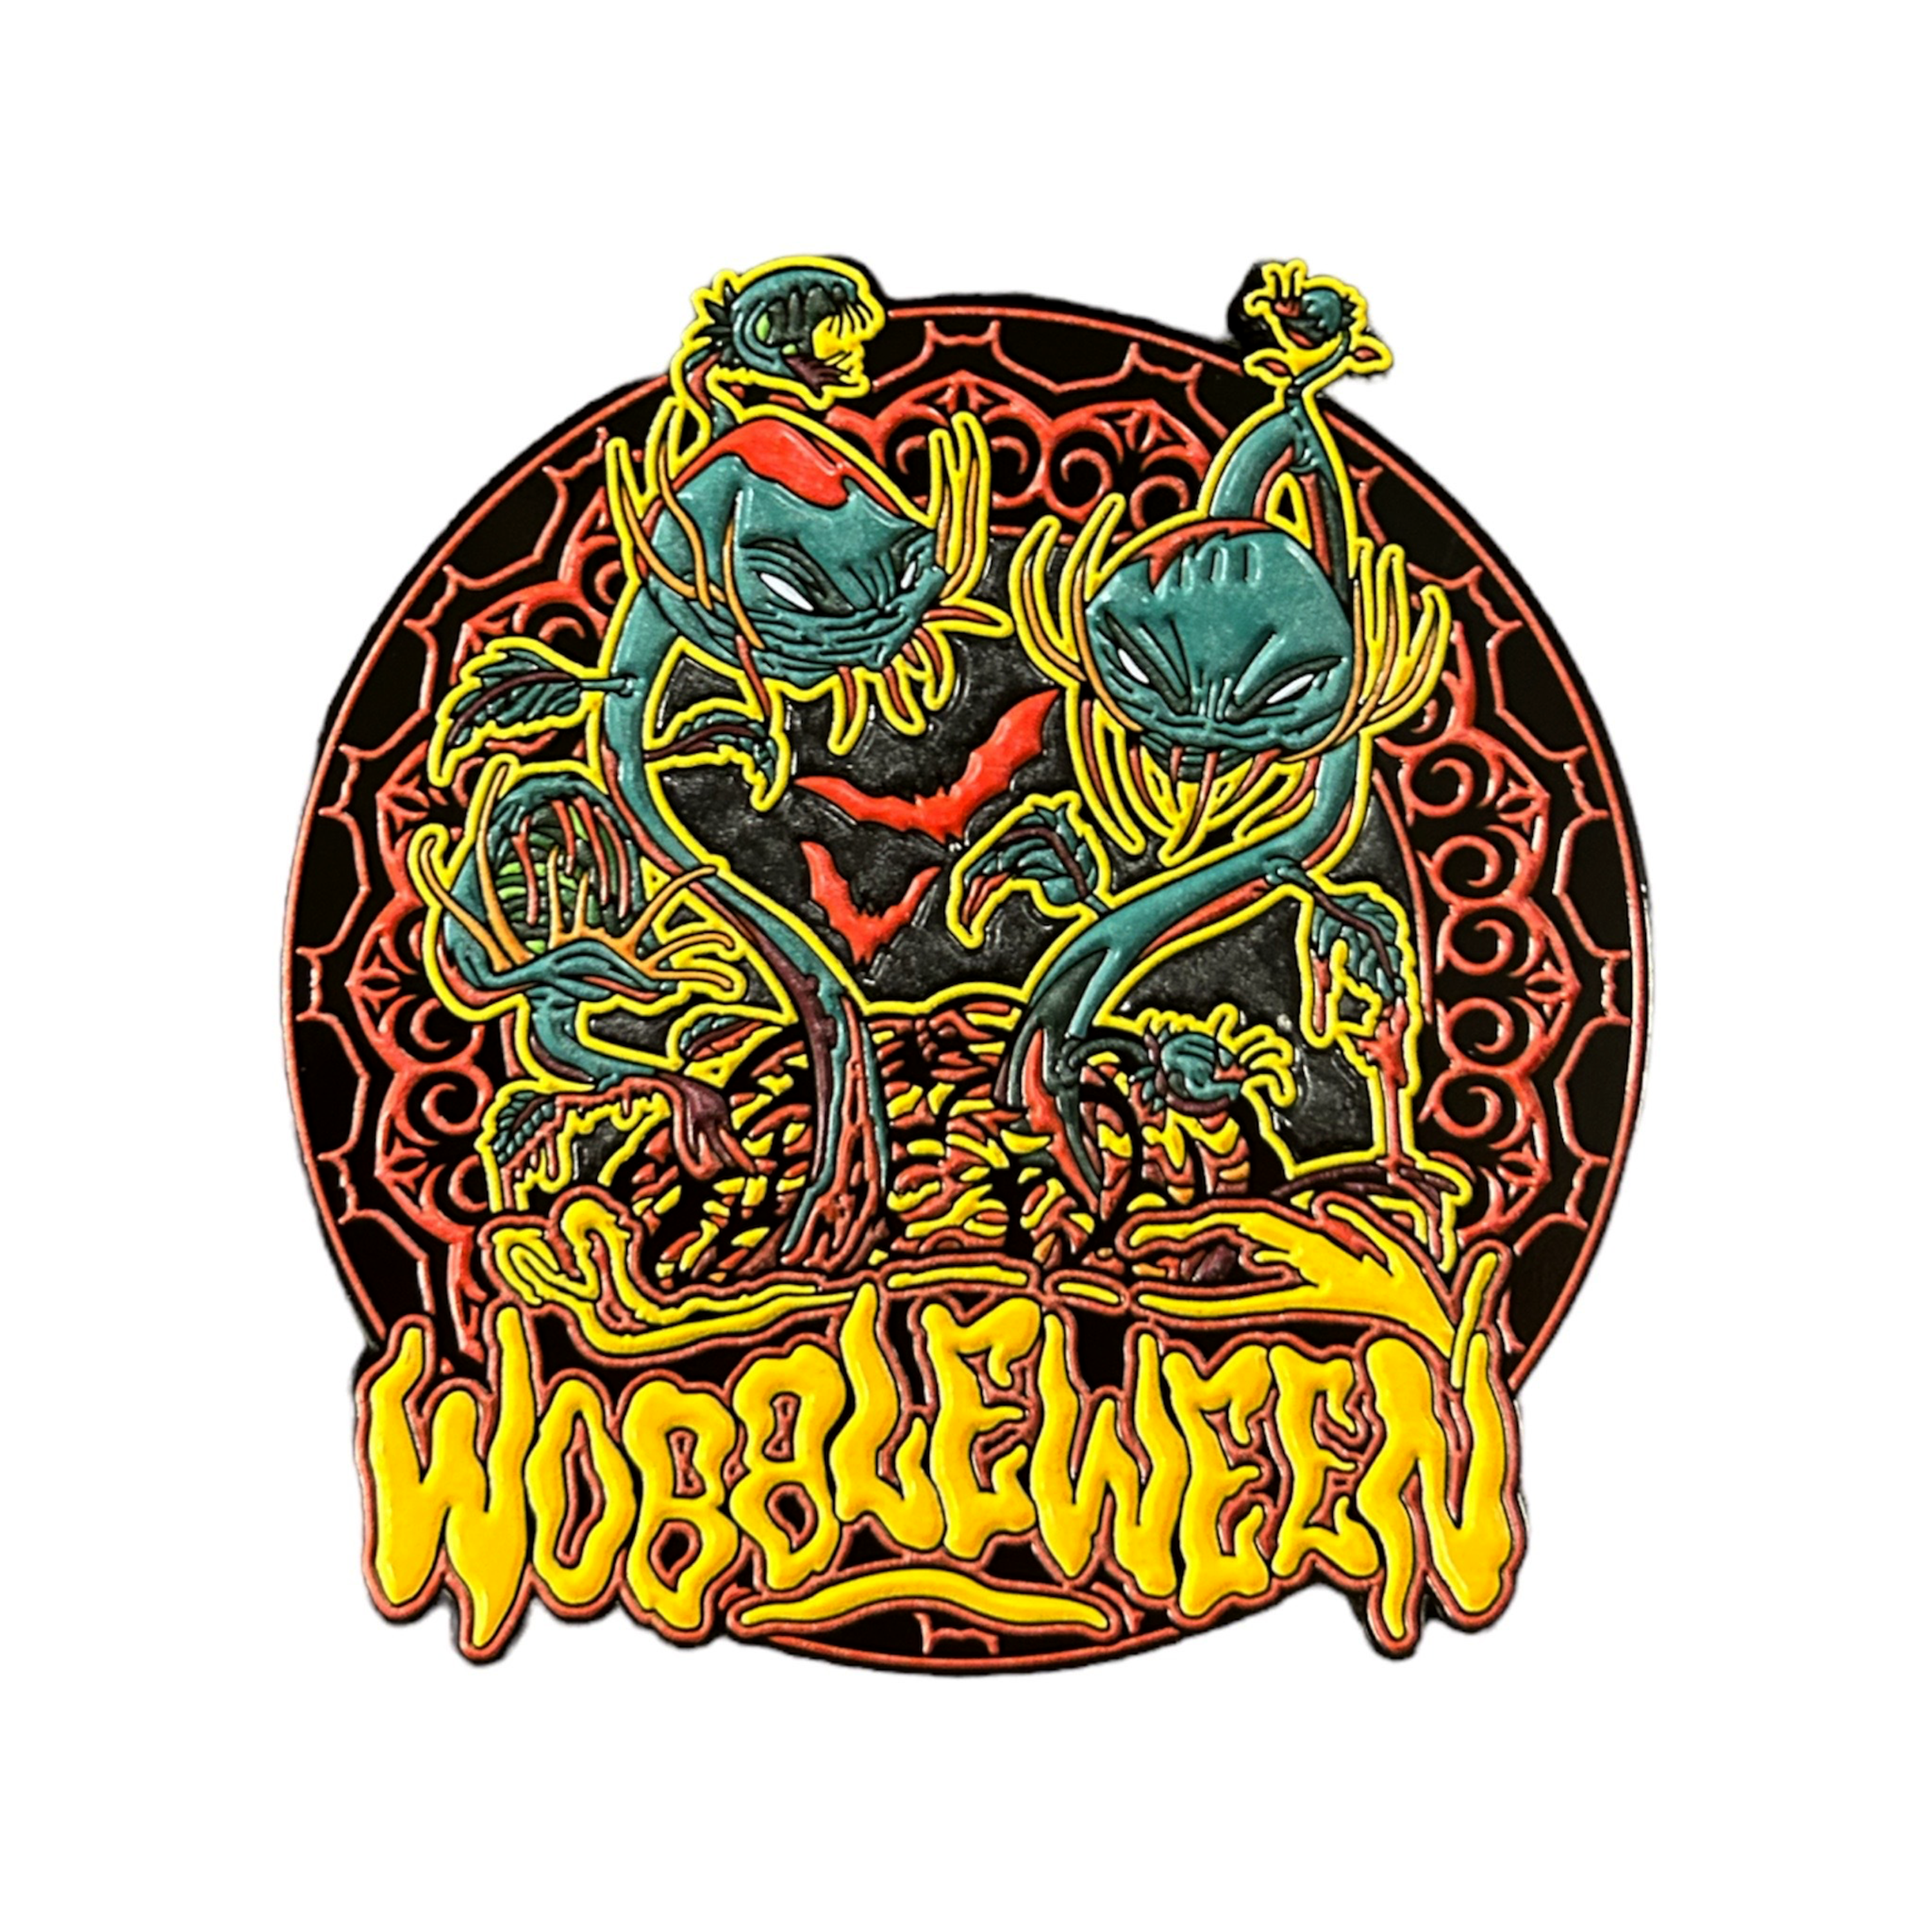 Wobbleween II Pin #2